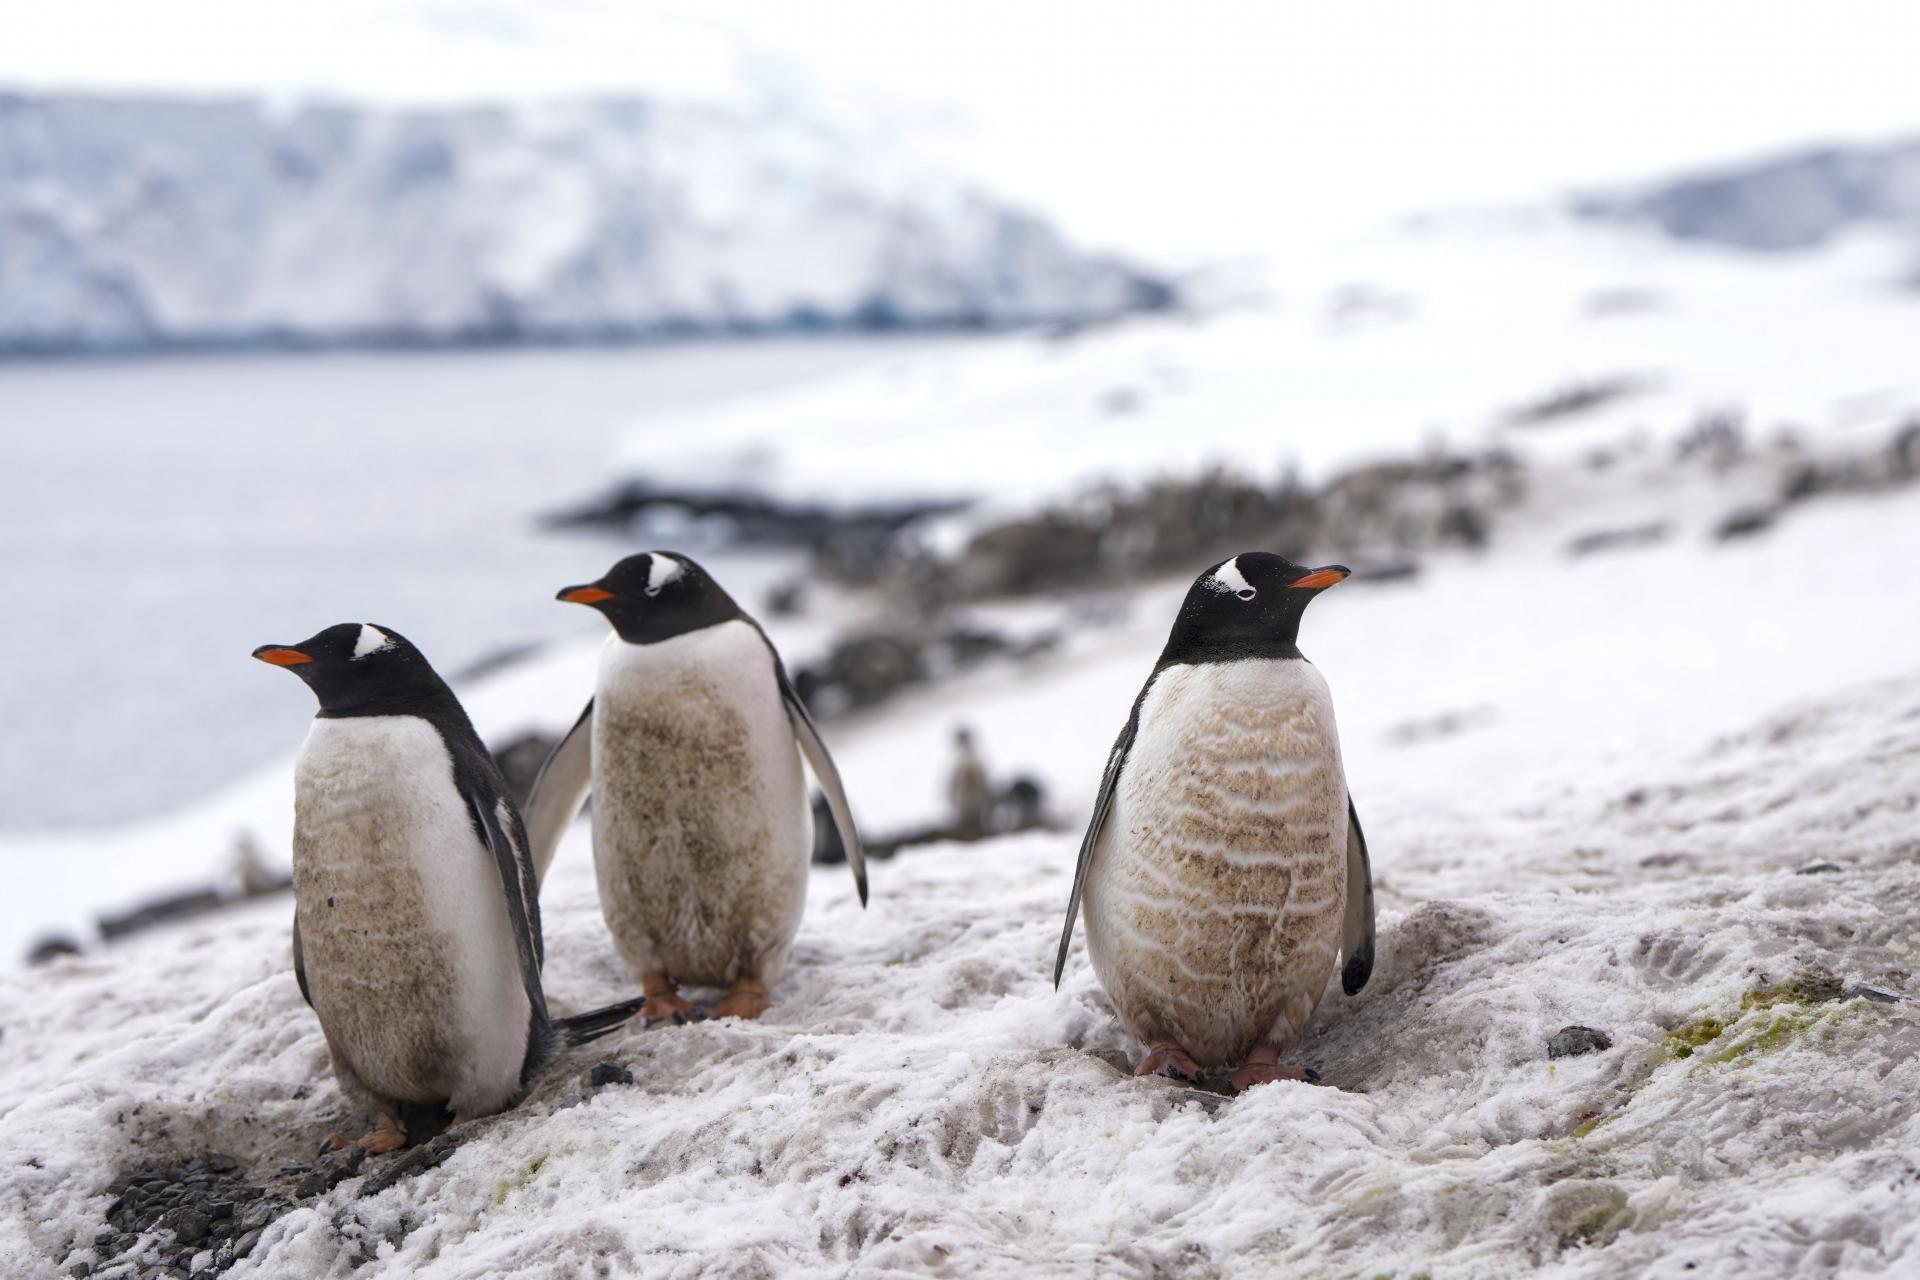 Recept na katastrofu. Zvieracie kolónie v mrazivej Antarktíde demoluje vtáčia chrípka